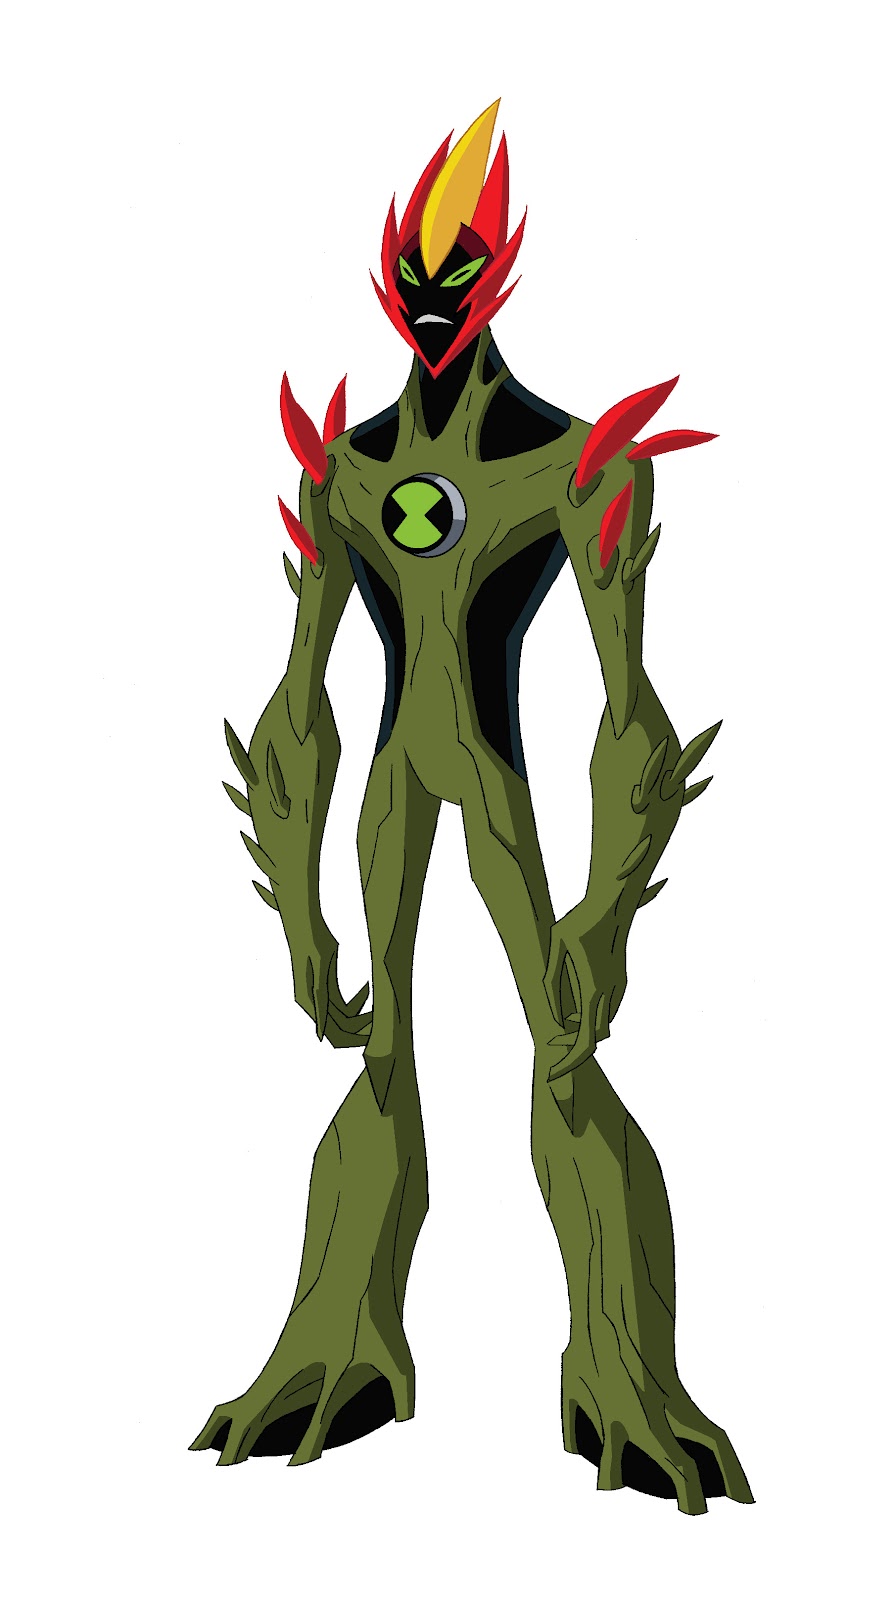 Dried Mango: Aliens Introduced in Ben 10 Alien Force